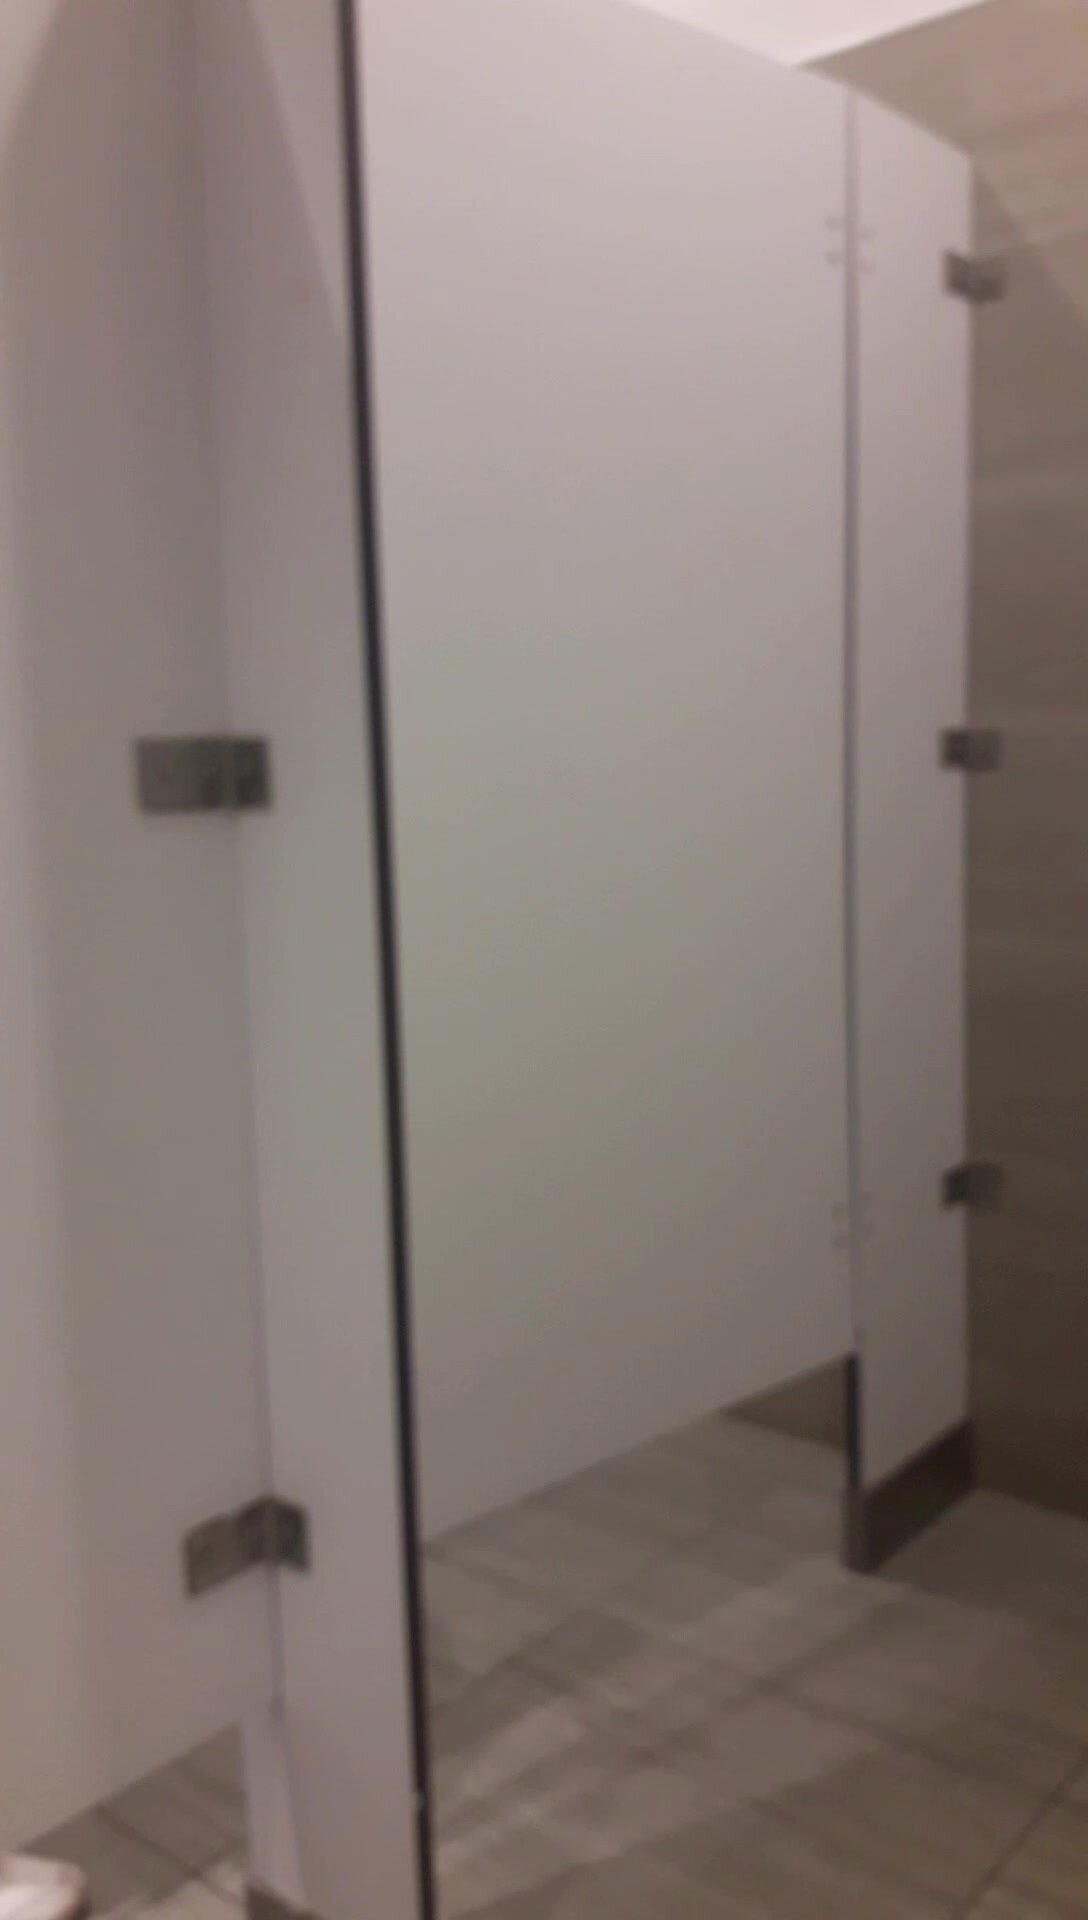 Strangers Opened The Public Toilet Door - video 11